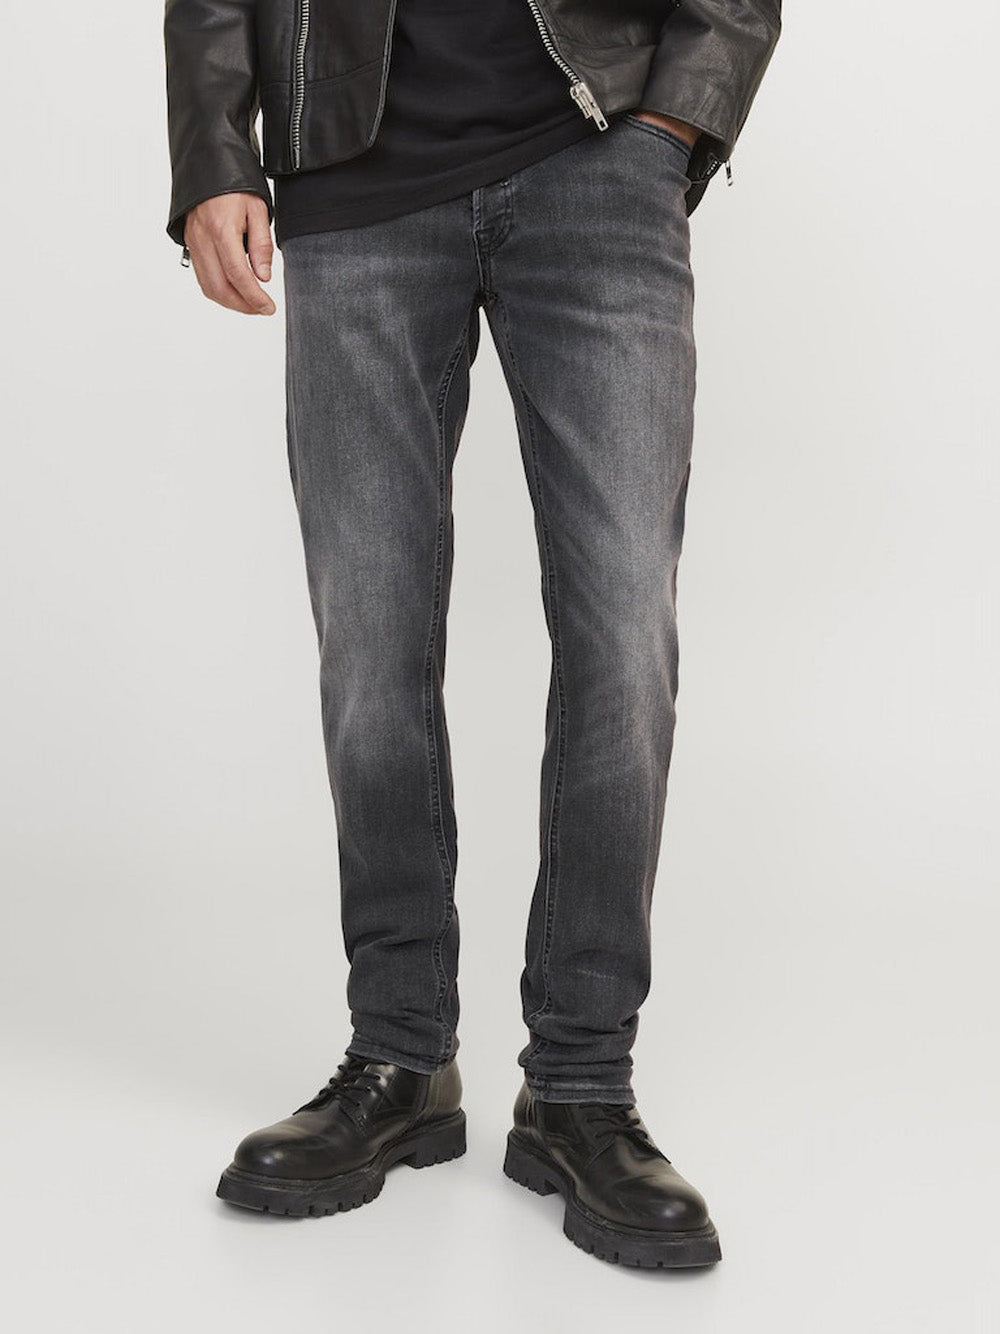 JACK&JONES Jeans Uomo - Nero modello 12159030